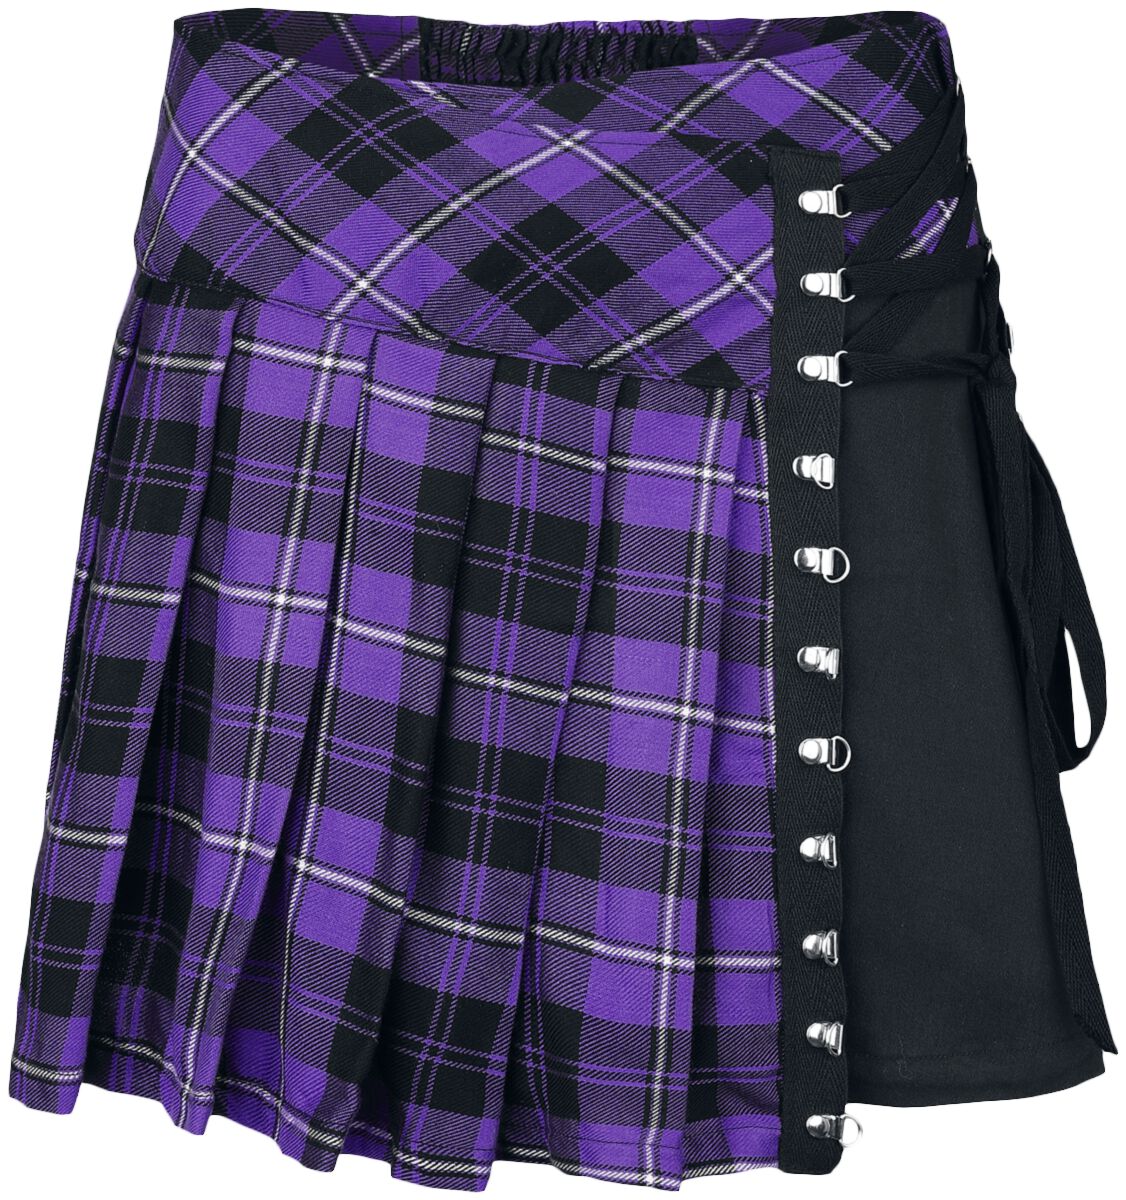 Jupe courte Gothic de Chemical Black - Hybrid Skirt - L à XL - pour Femme - lilas/noir